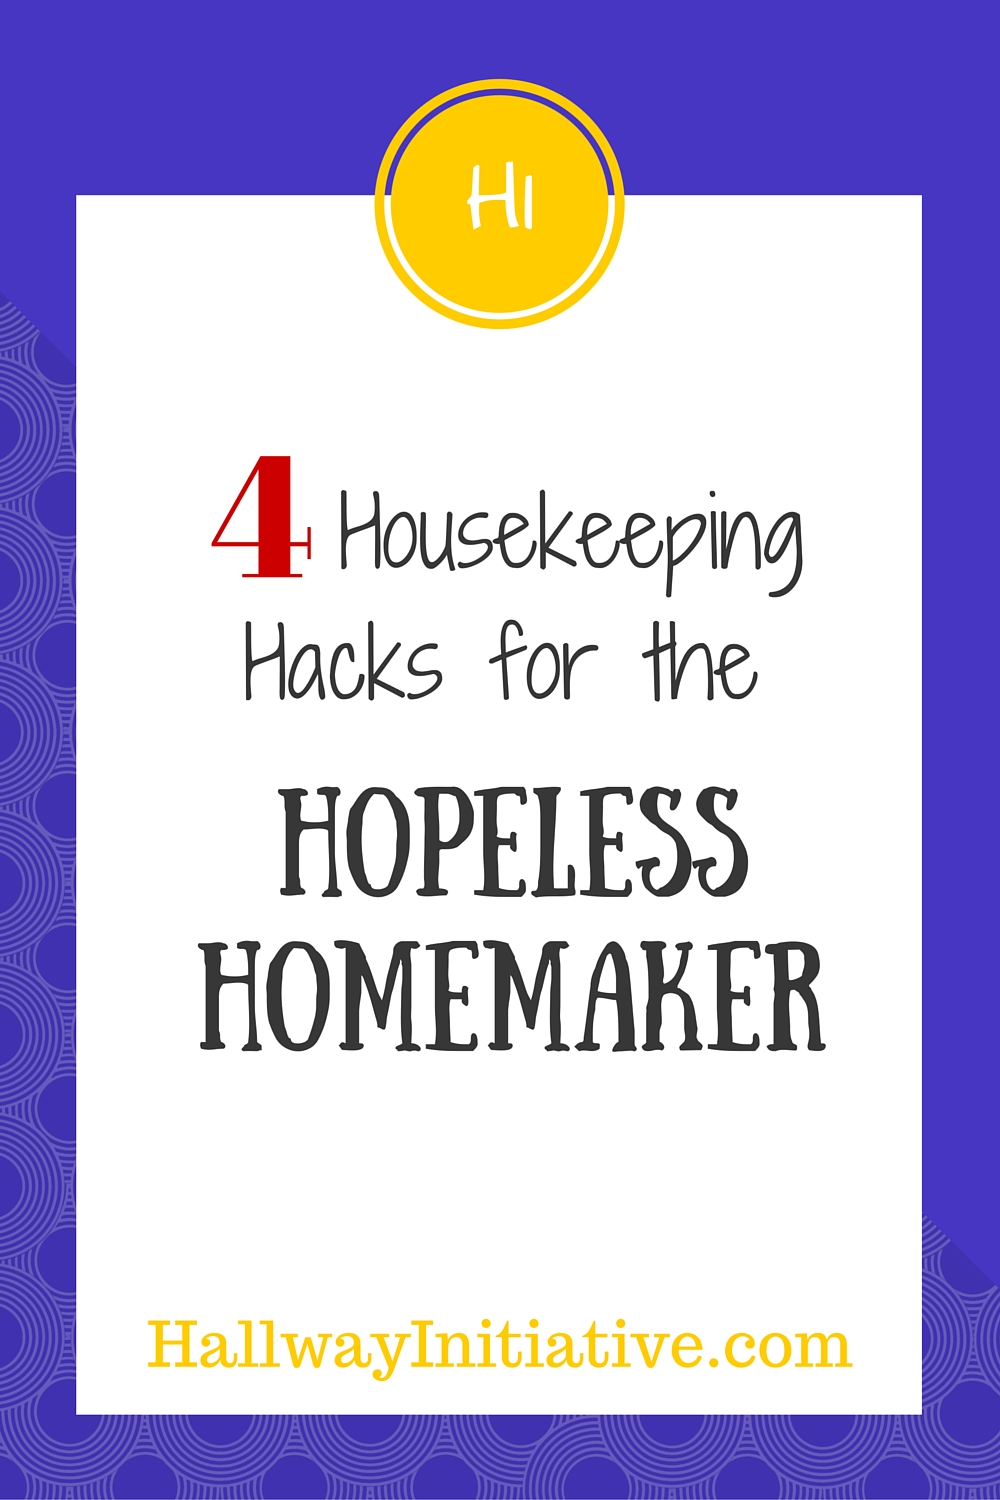 4 housekeeping hacks for the hopeless homemaker